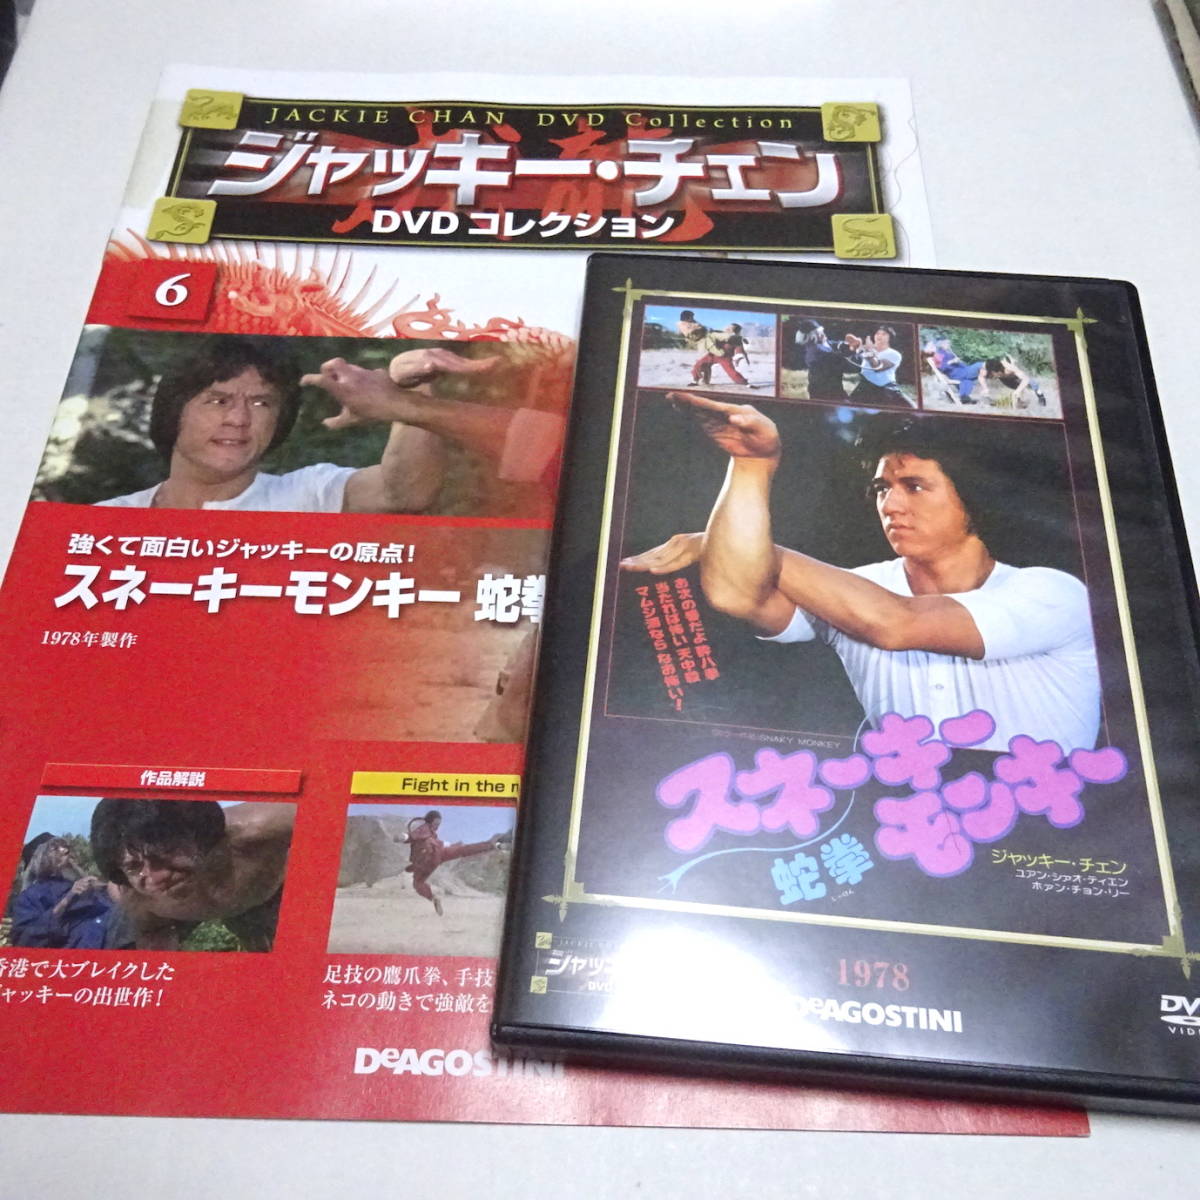 DVD冊子「スネーキーモンキー蛇拳」ジャッキー・チェンDVDコレクション